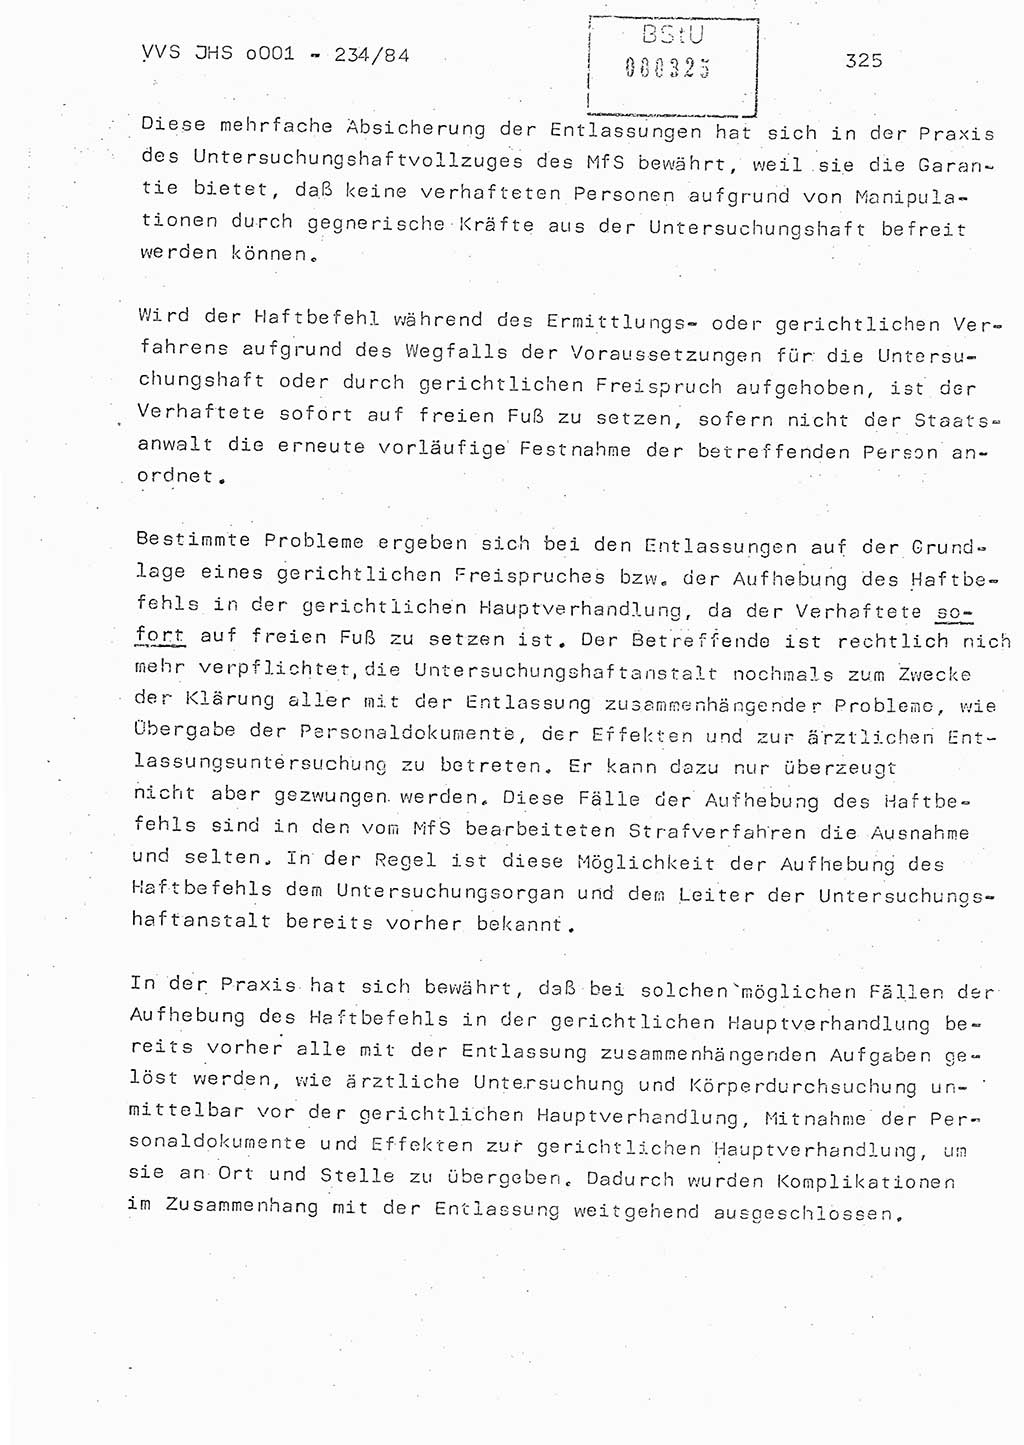 Dissertation Oberst Siegfried Rataizick (Abt. ⅩⅣ), Oberstleutnant Volkmar Heinz (Abt. ⅩⅣ), Oberstleutnant Werner Stein (HA Ⅸ), Hauptmann Heinz Conrad (JHS), Ministerium für Staatssicherheit (MfS) [Deutsche Demokratische Republik (DDR)], Juristische Hochschule (JHS), Vertrauliche Verschlußsache (VVS) o001-234/84, Potsdam 1984, Seite 325 (Diss. MfS DDR JHS VVS o001-234/84 1984, S. 325)